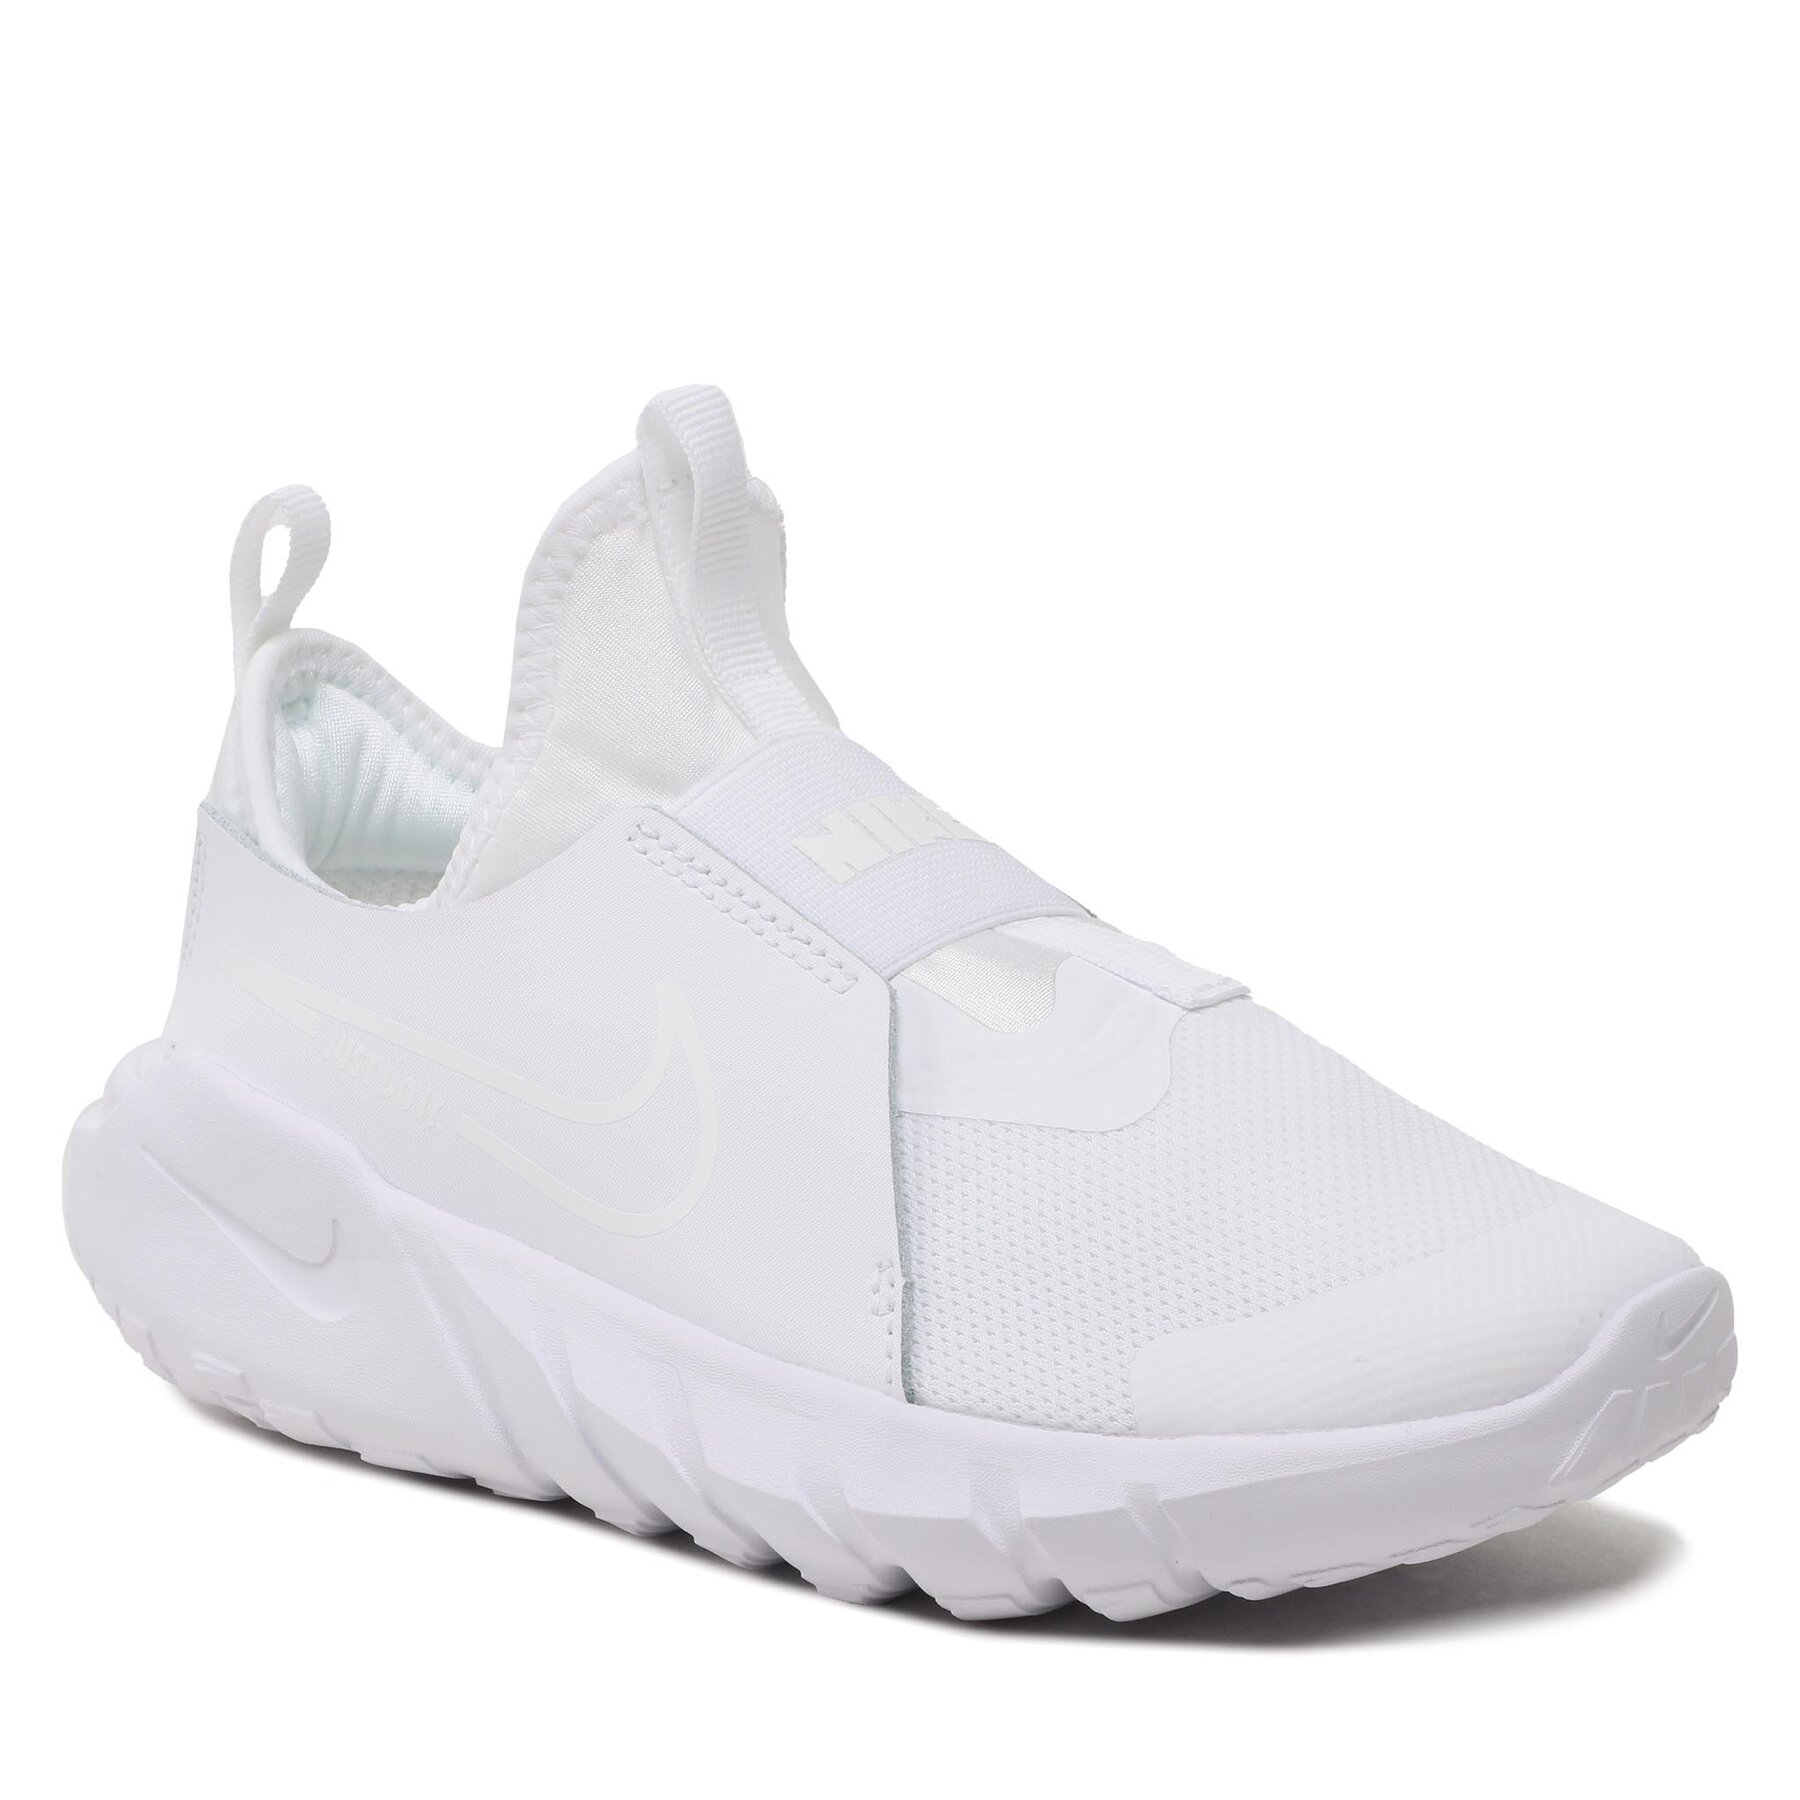 Skor Nike Flex Runner 2 (Gs) DJ6038 100 White/White